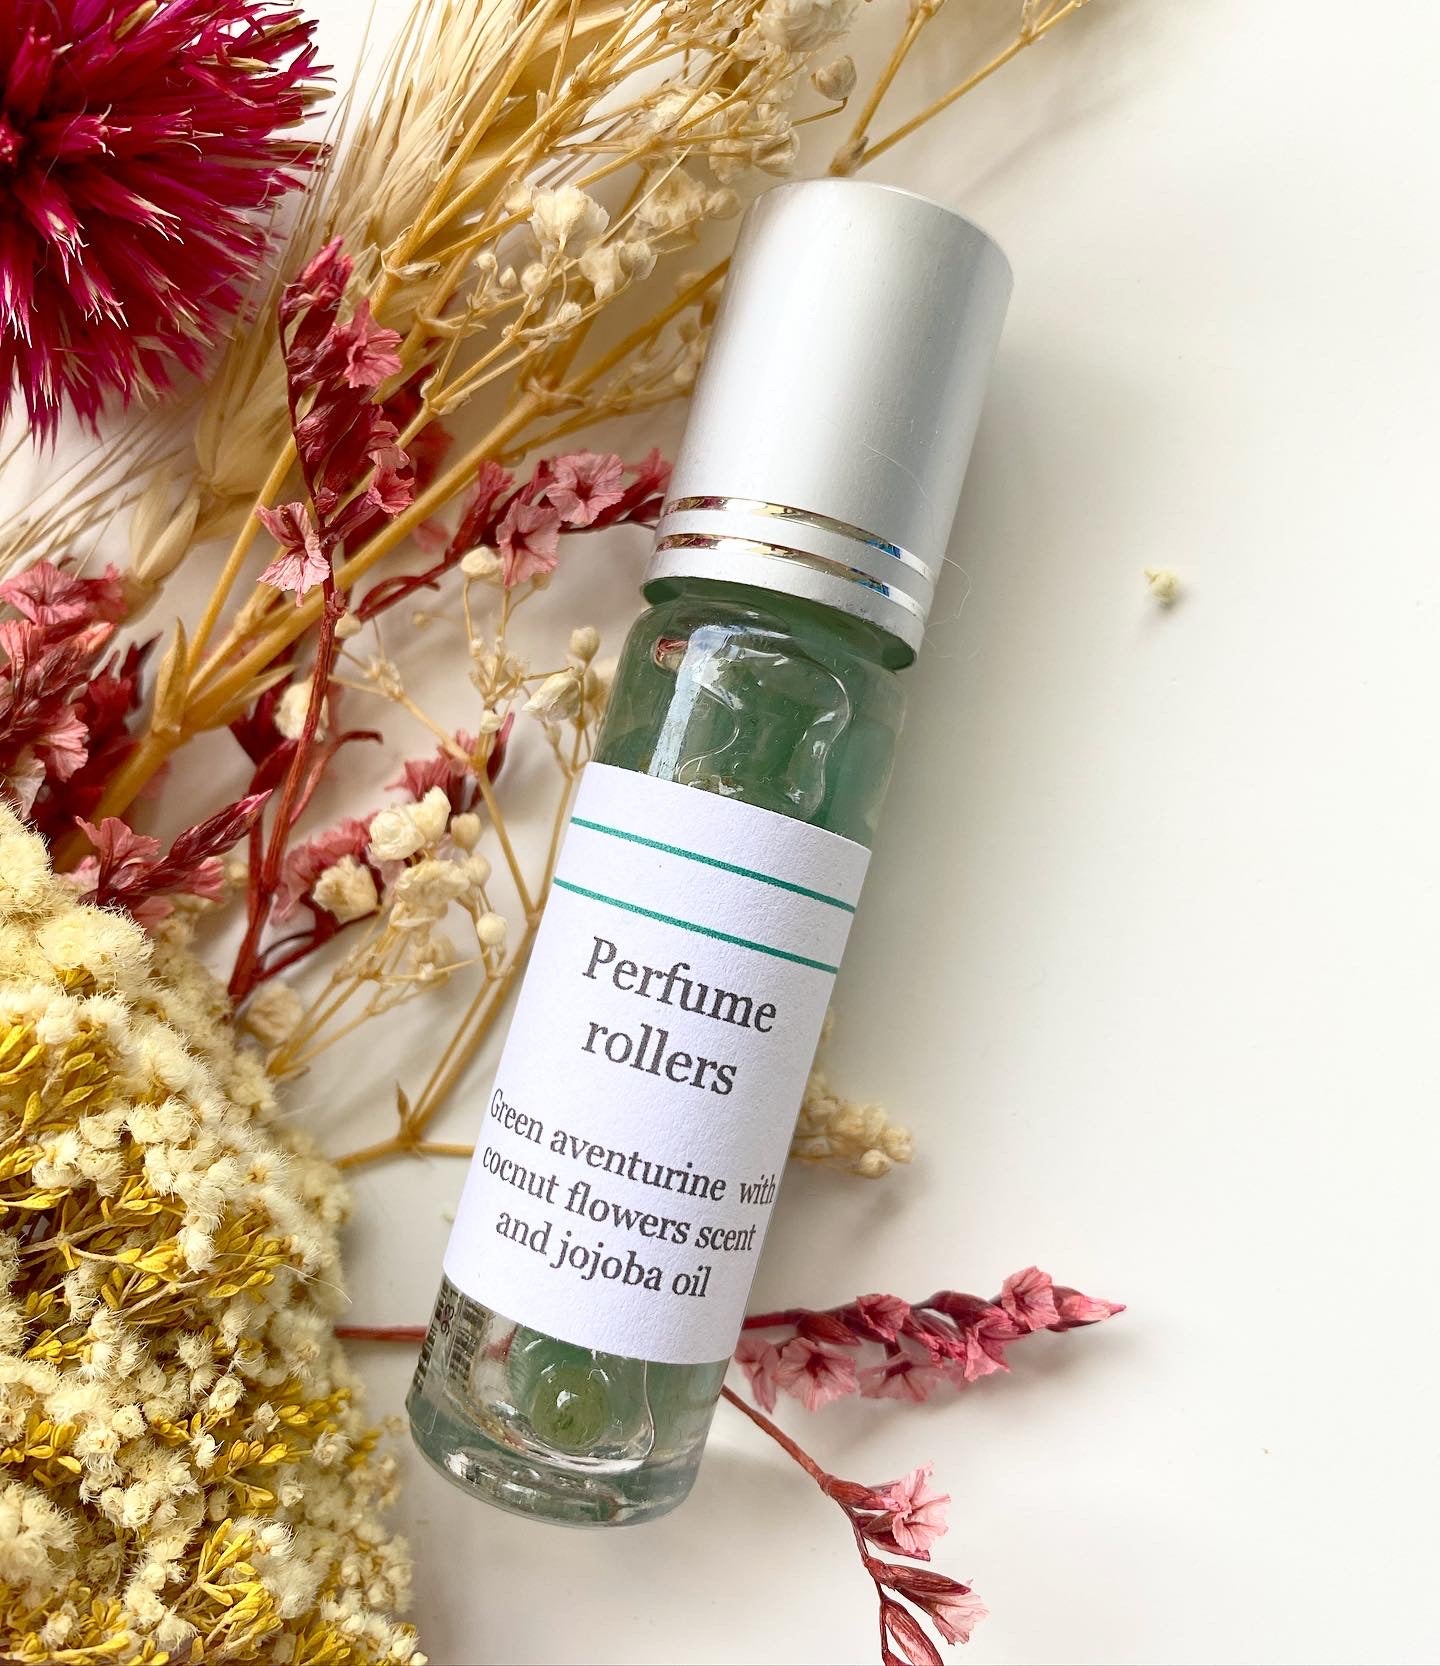 Green Aventurine | Coconut Flower Perfume Oil Roller